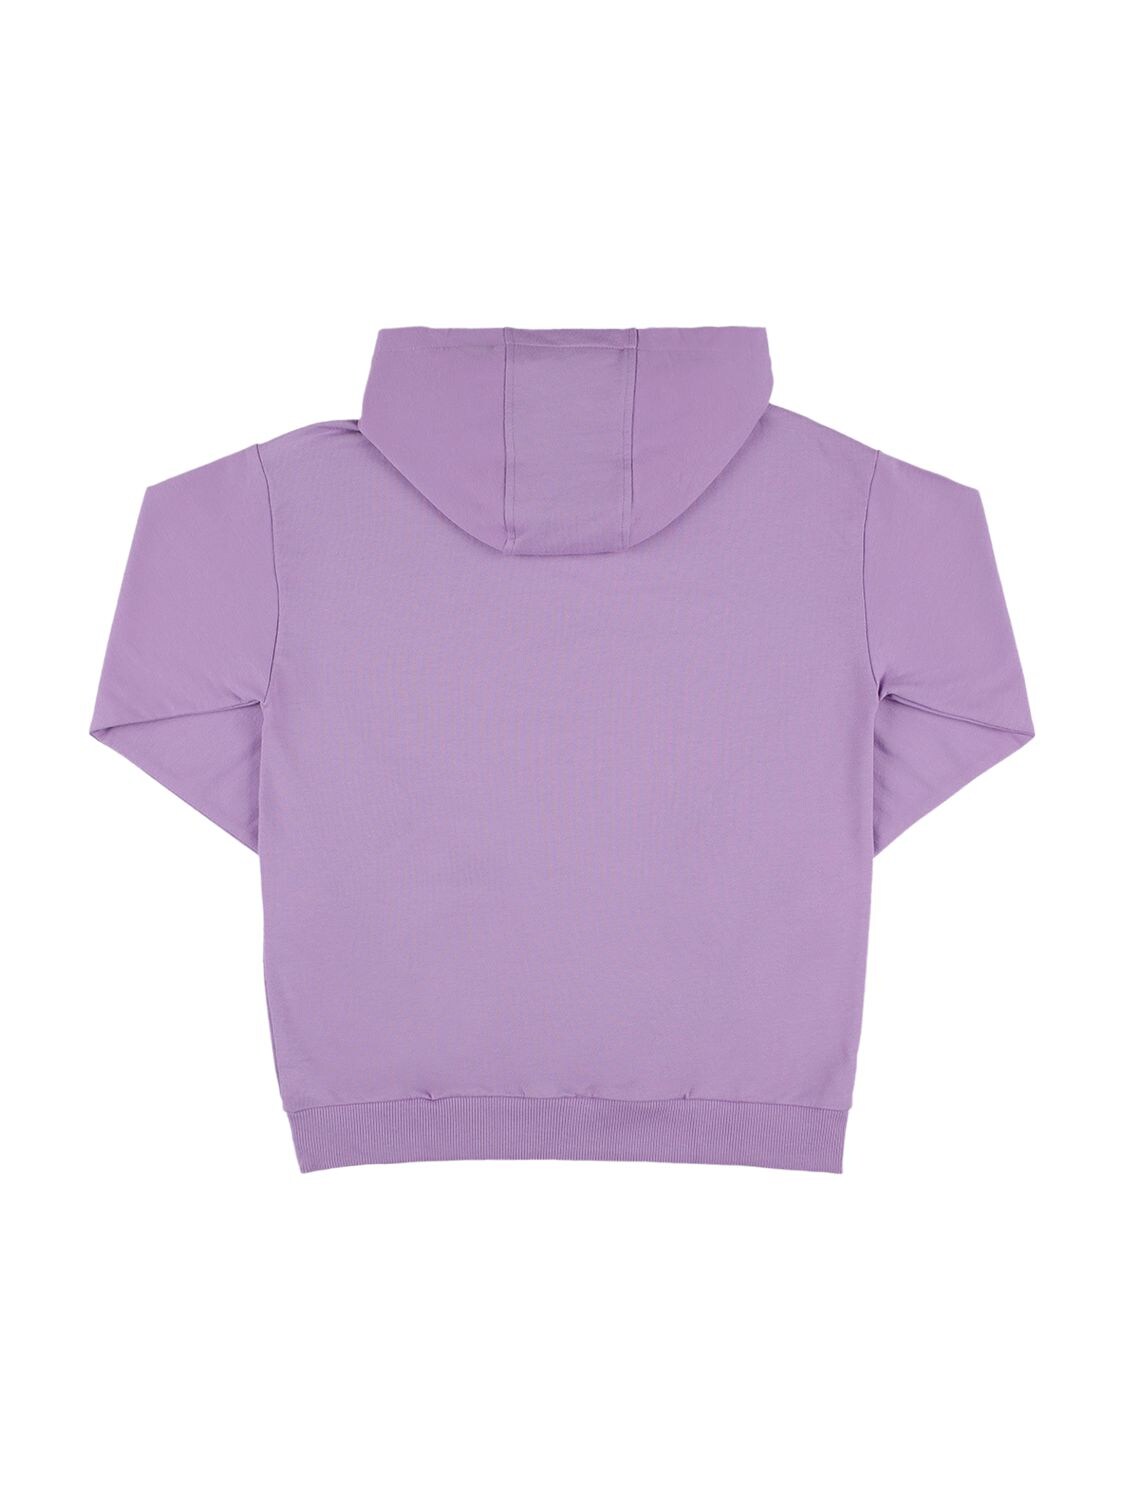 Shop Versace Printed Cotton Sweatshirt Hoodie In Light Purple